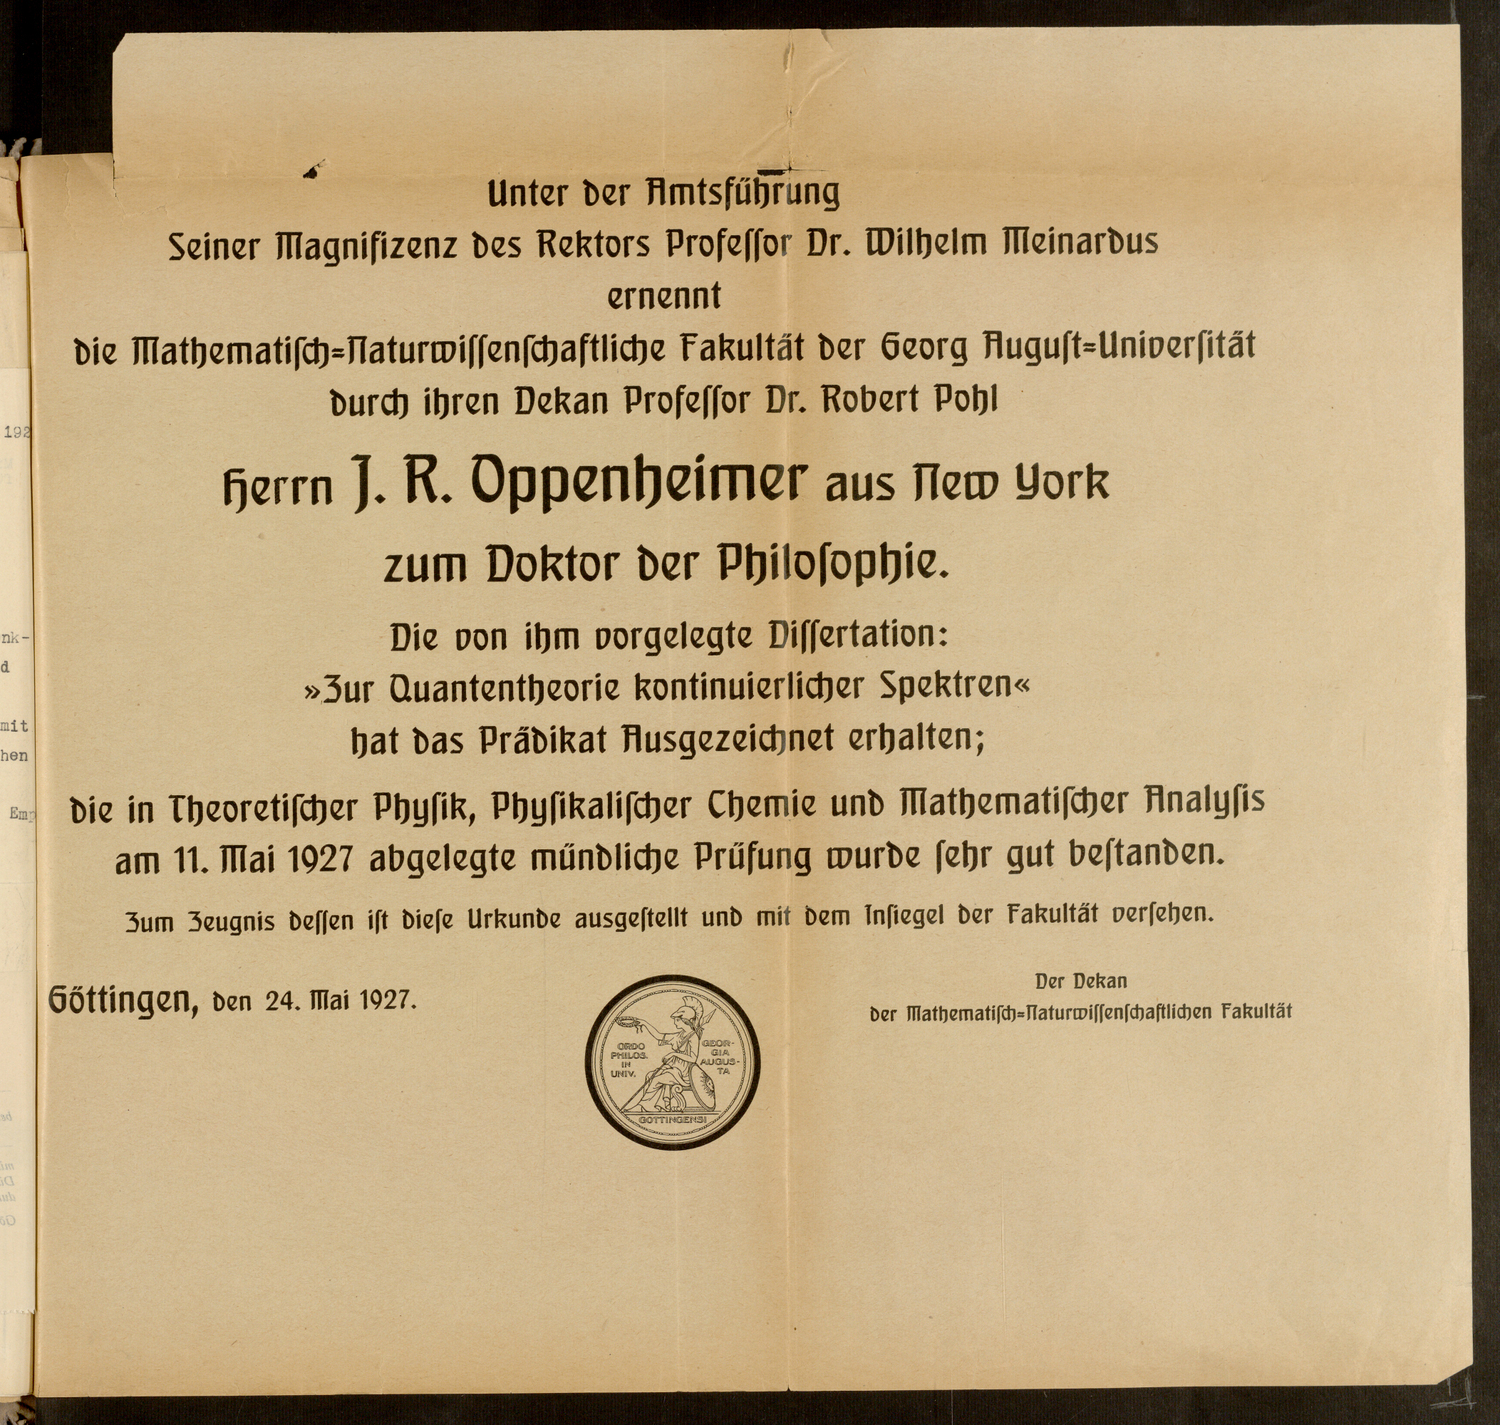 Zweitschrift von Oppenheimers Promotionsurkunde